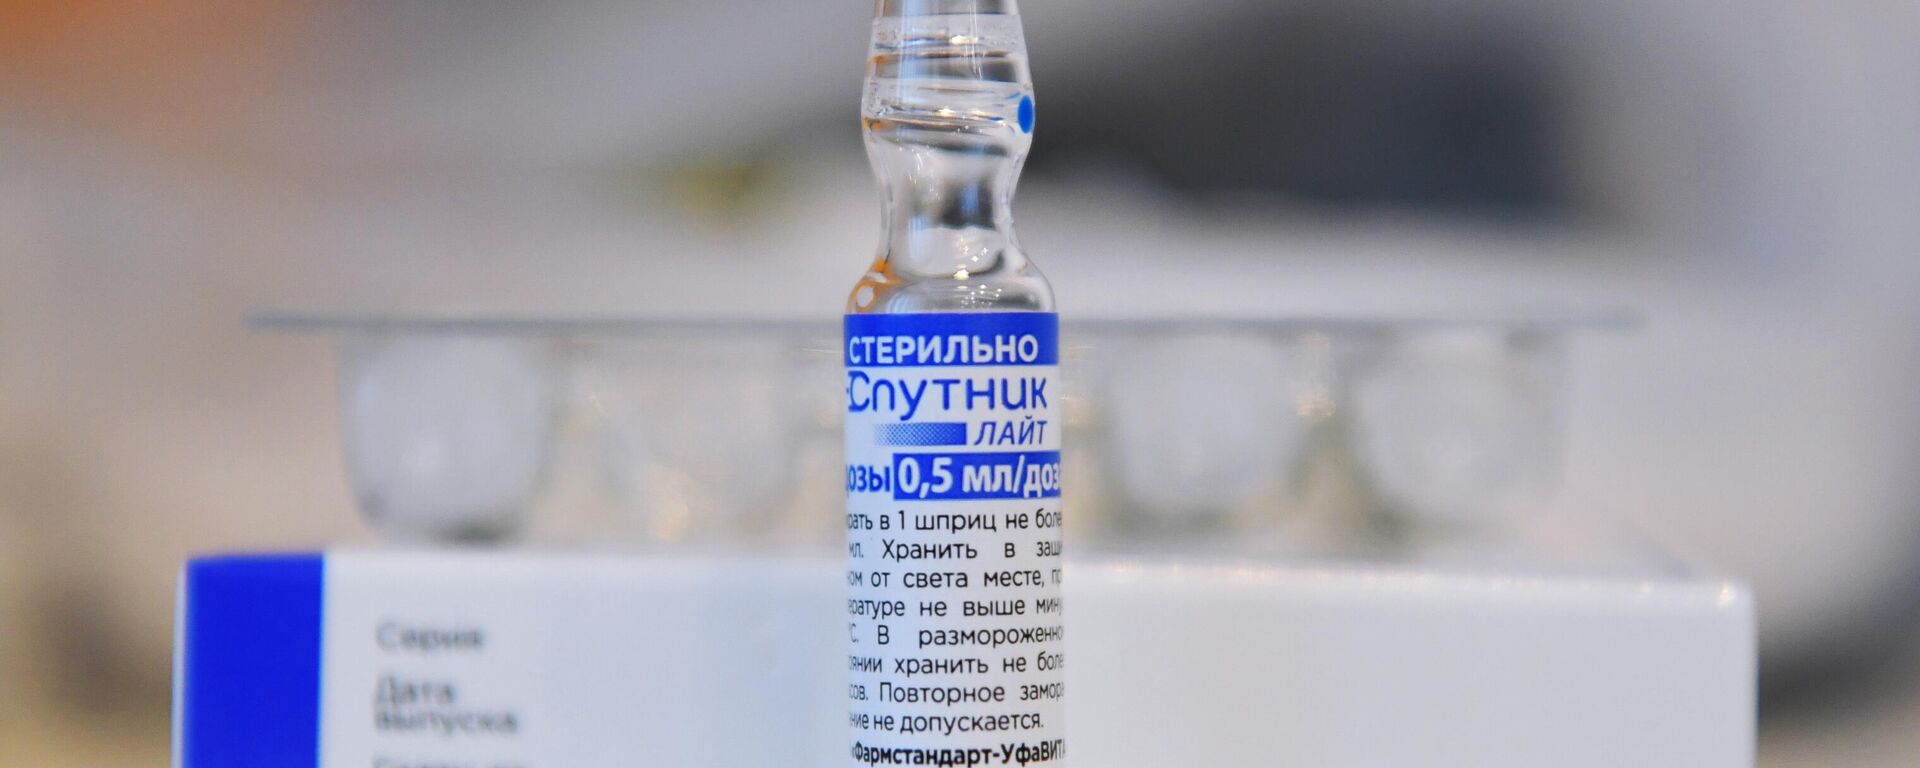 Выездная вакцинация сотрудников отеля River Park в Новосибирске - Sputnik Moldova, 1920, 08.11.2021